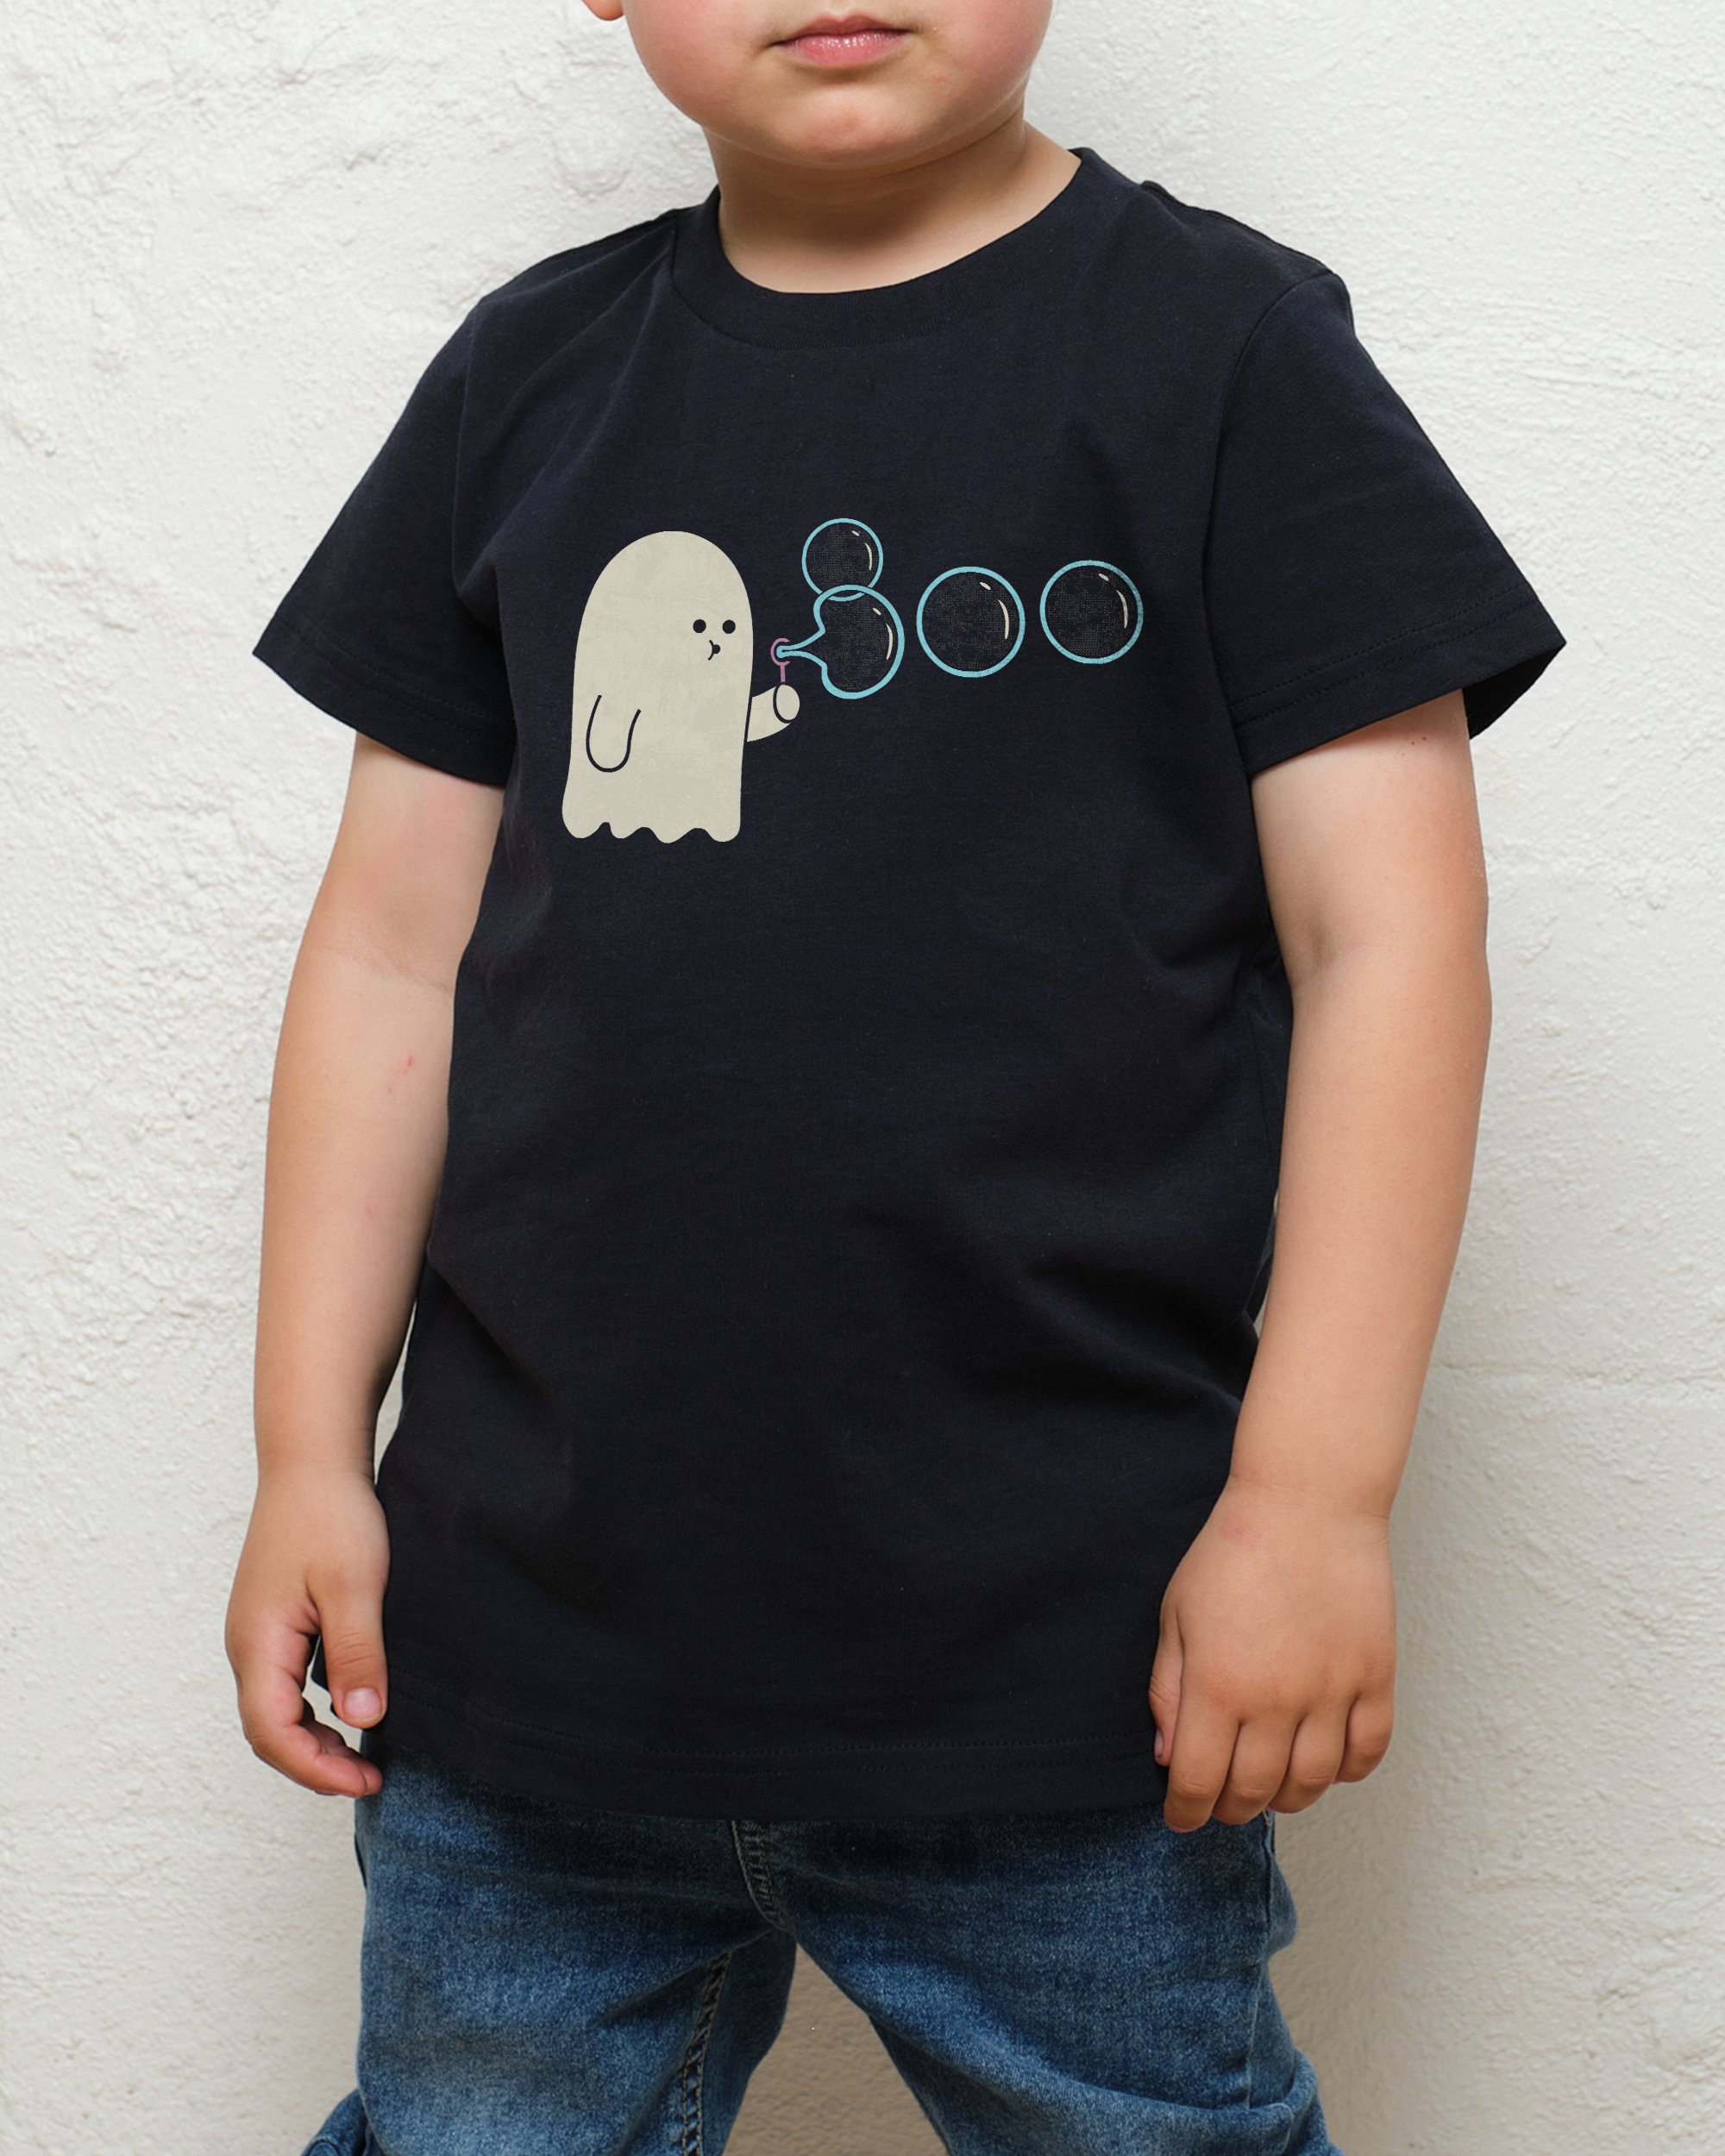 Boobles Kids T-Shirt